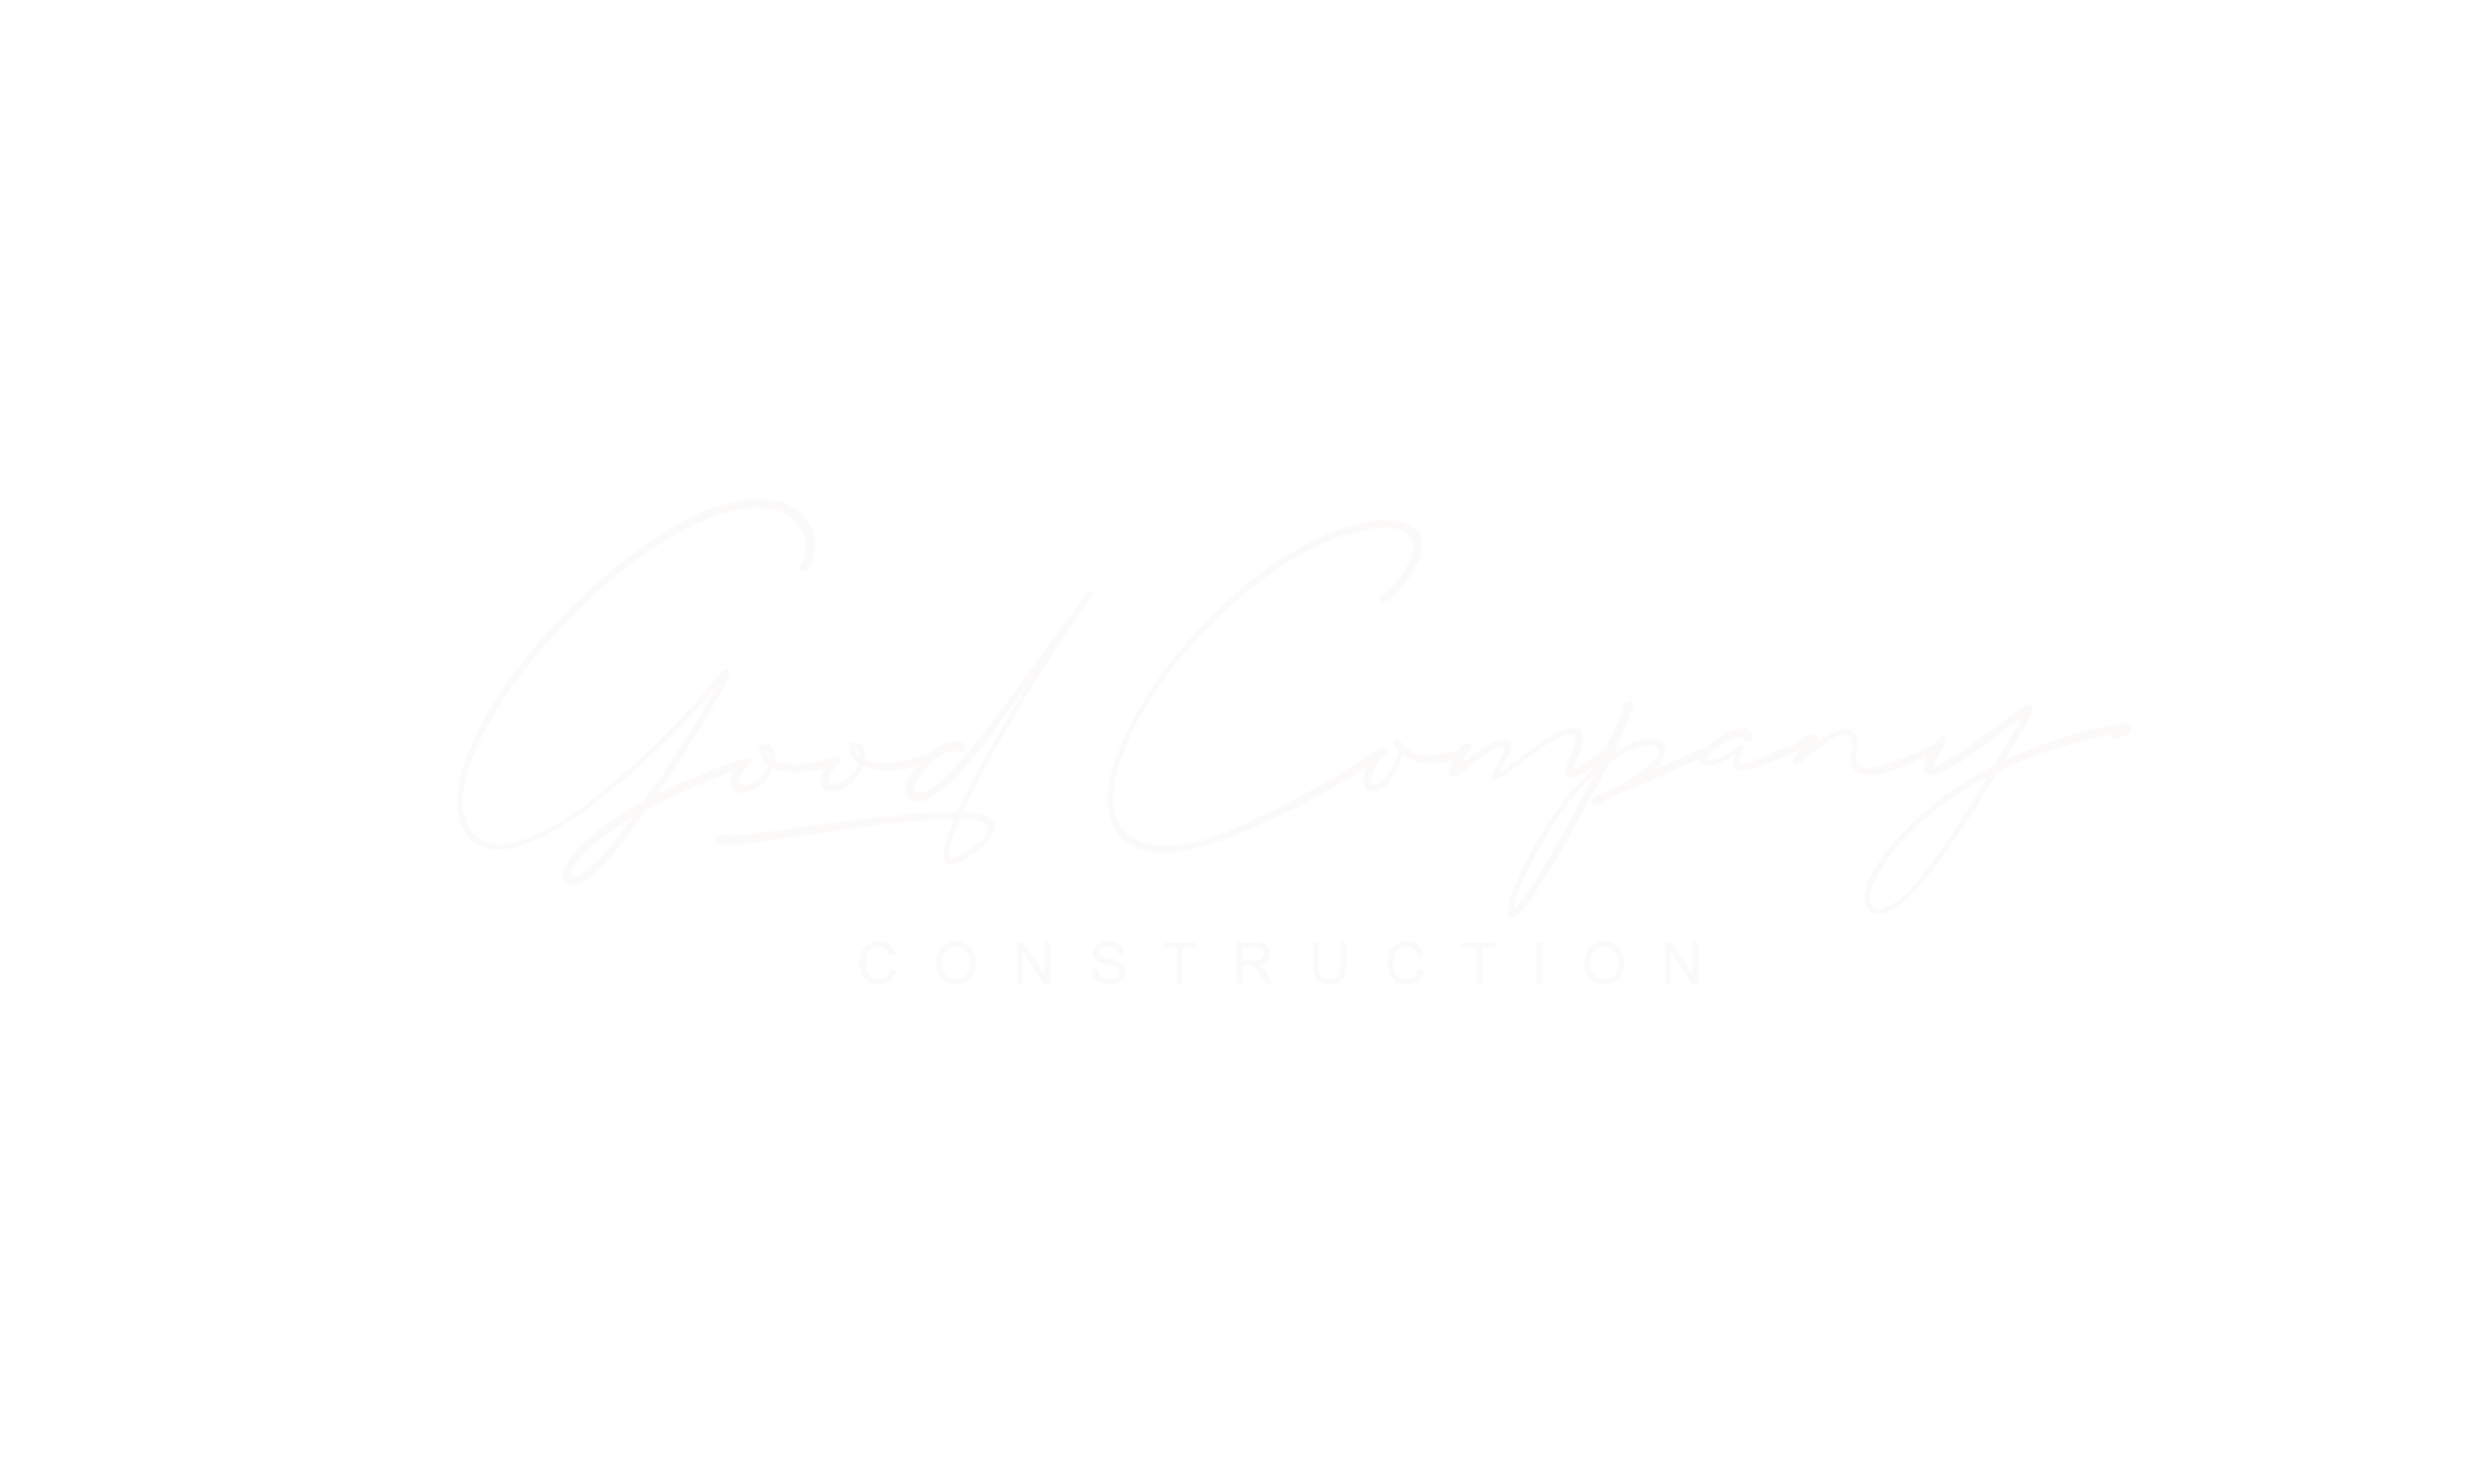 Good Company Construction Logo